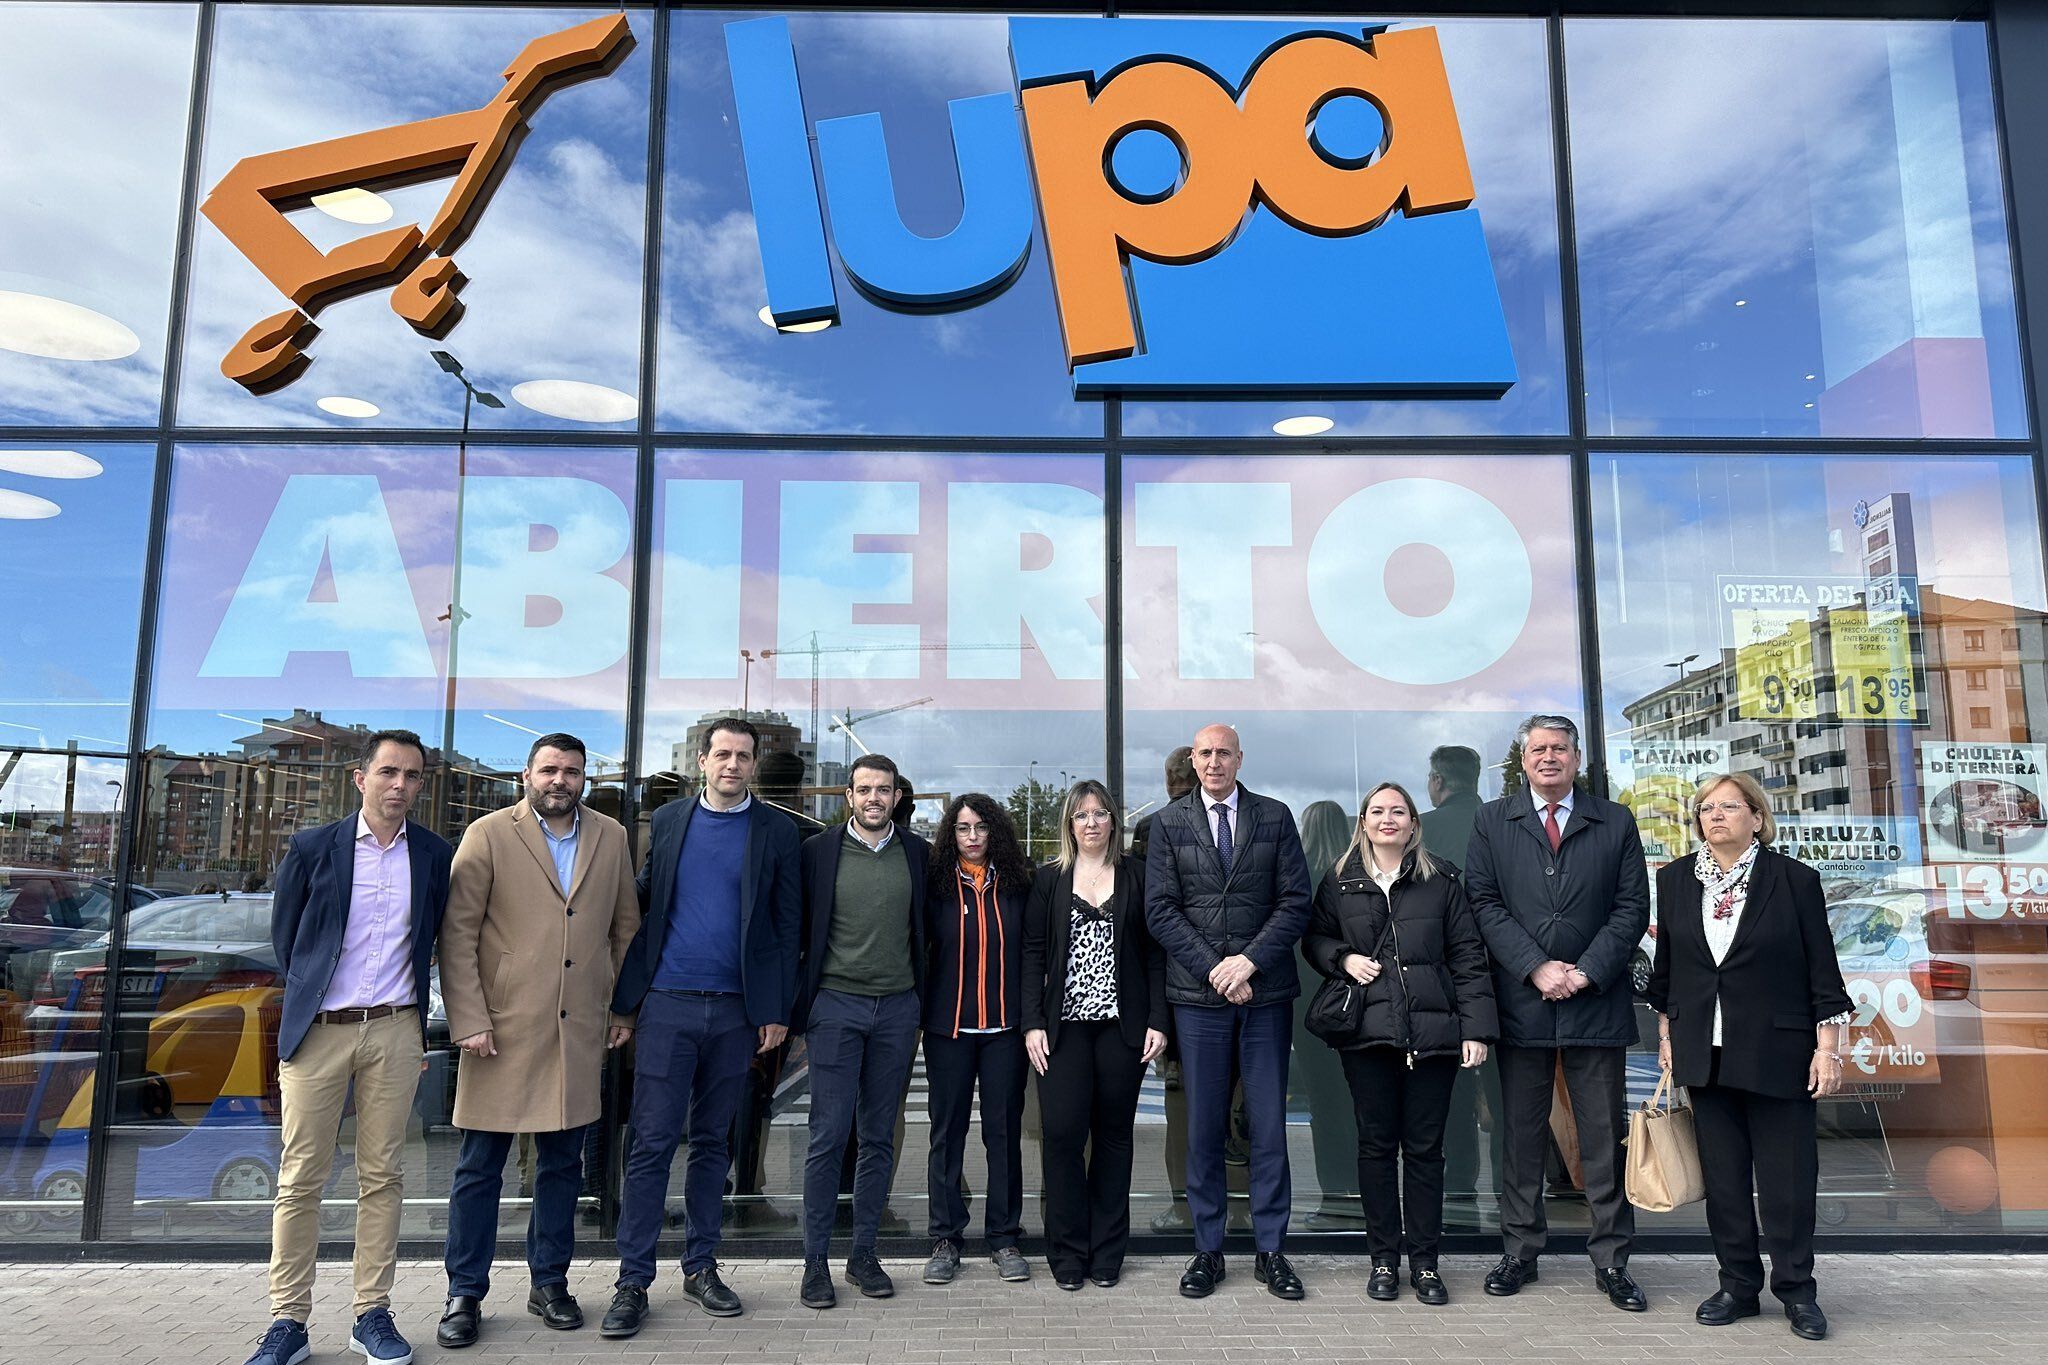 Lupa abre su segunda tienda en León capital creando 45 empleos directos